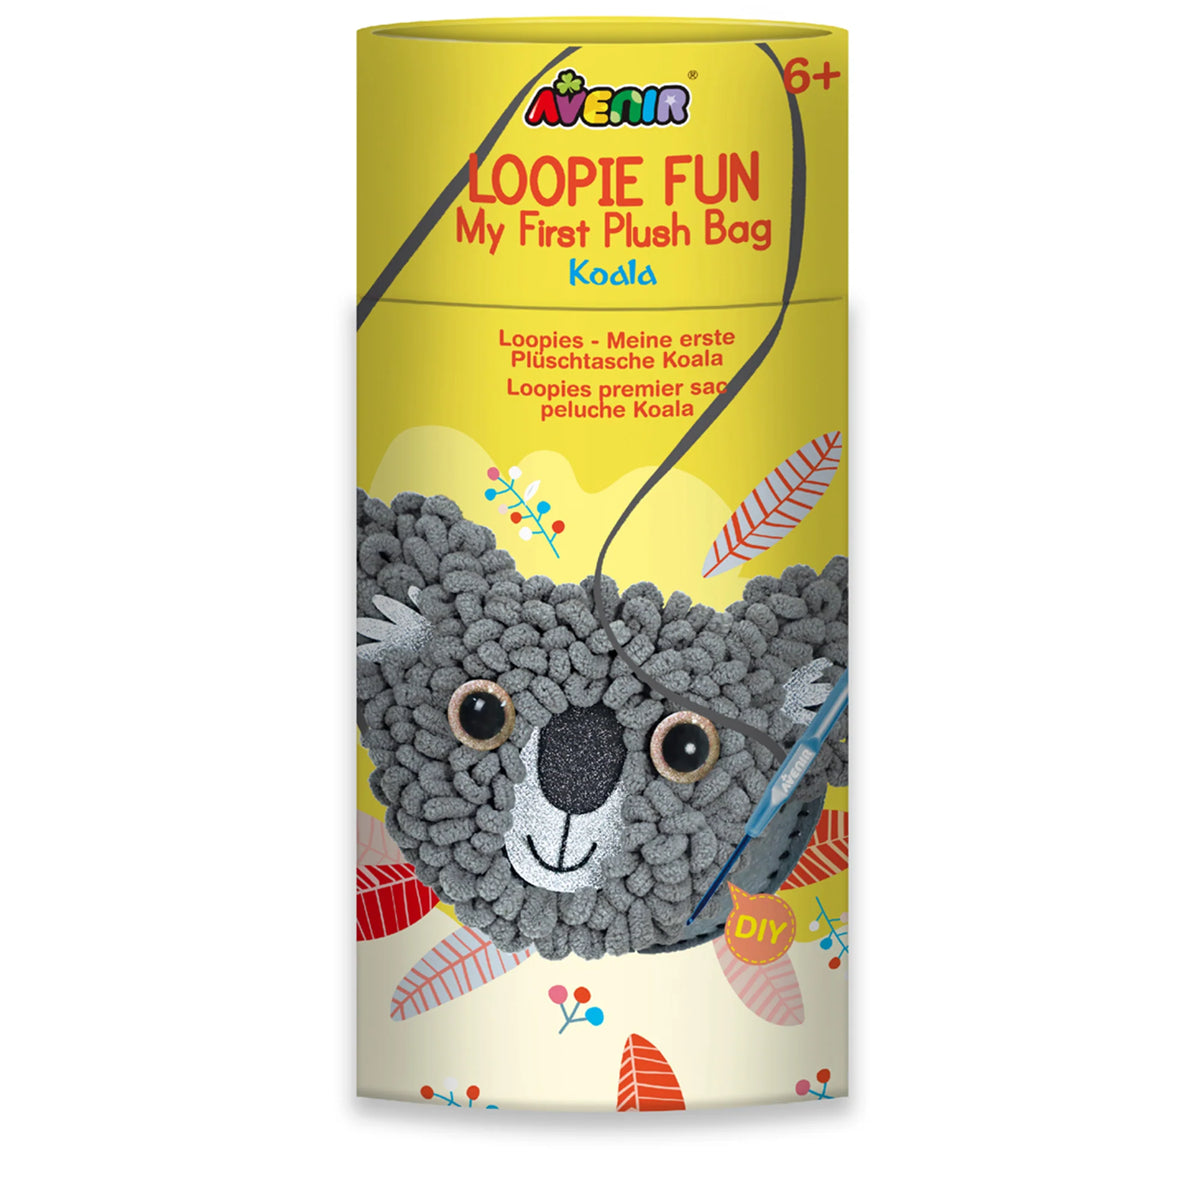 Koala Loopie Fun Bag Kit